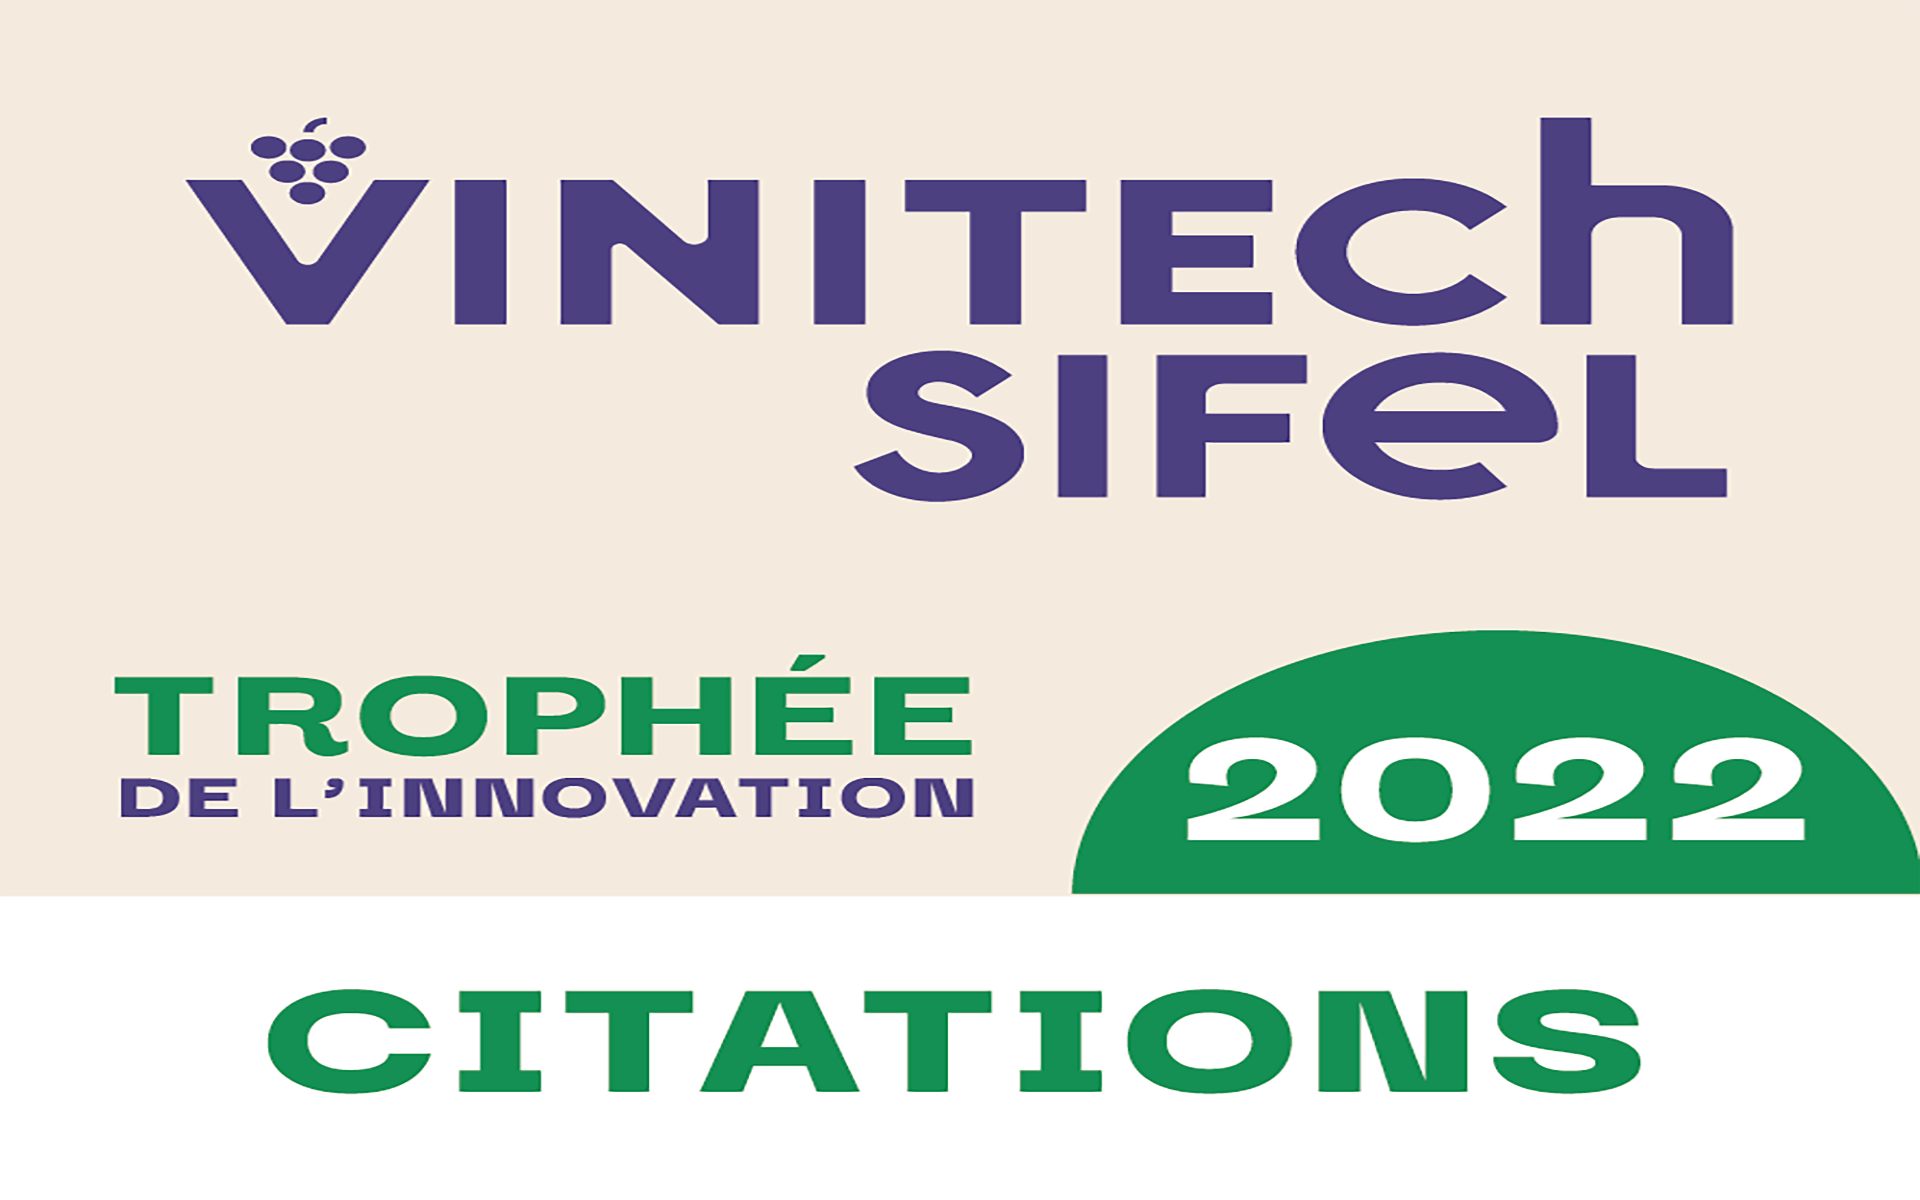 Imagen Trofeos de la Innovación - Vinitech 2022